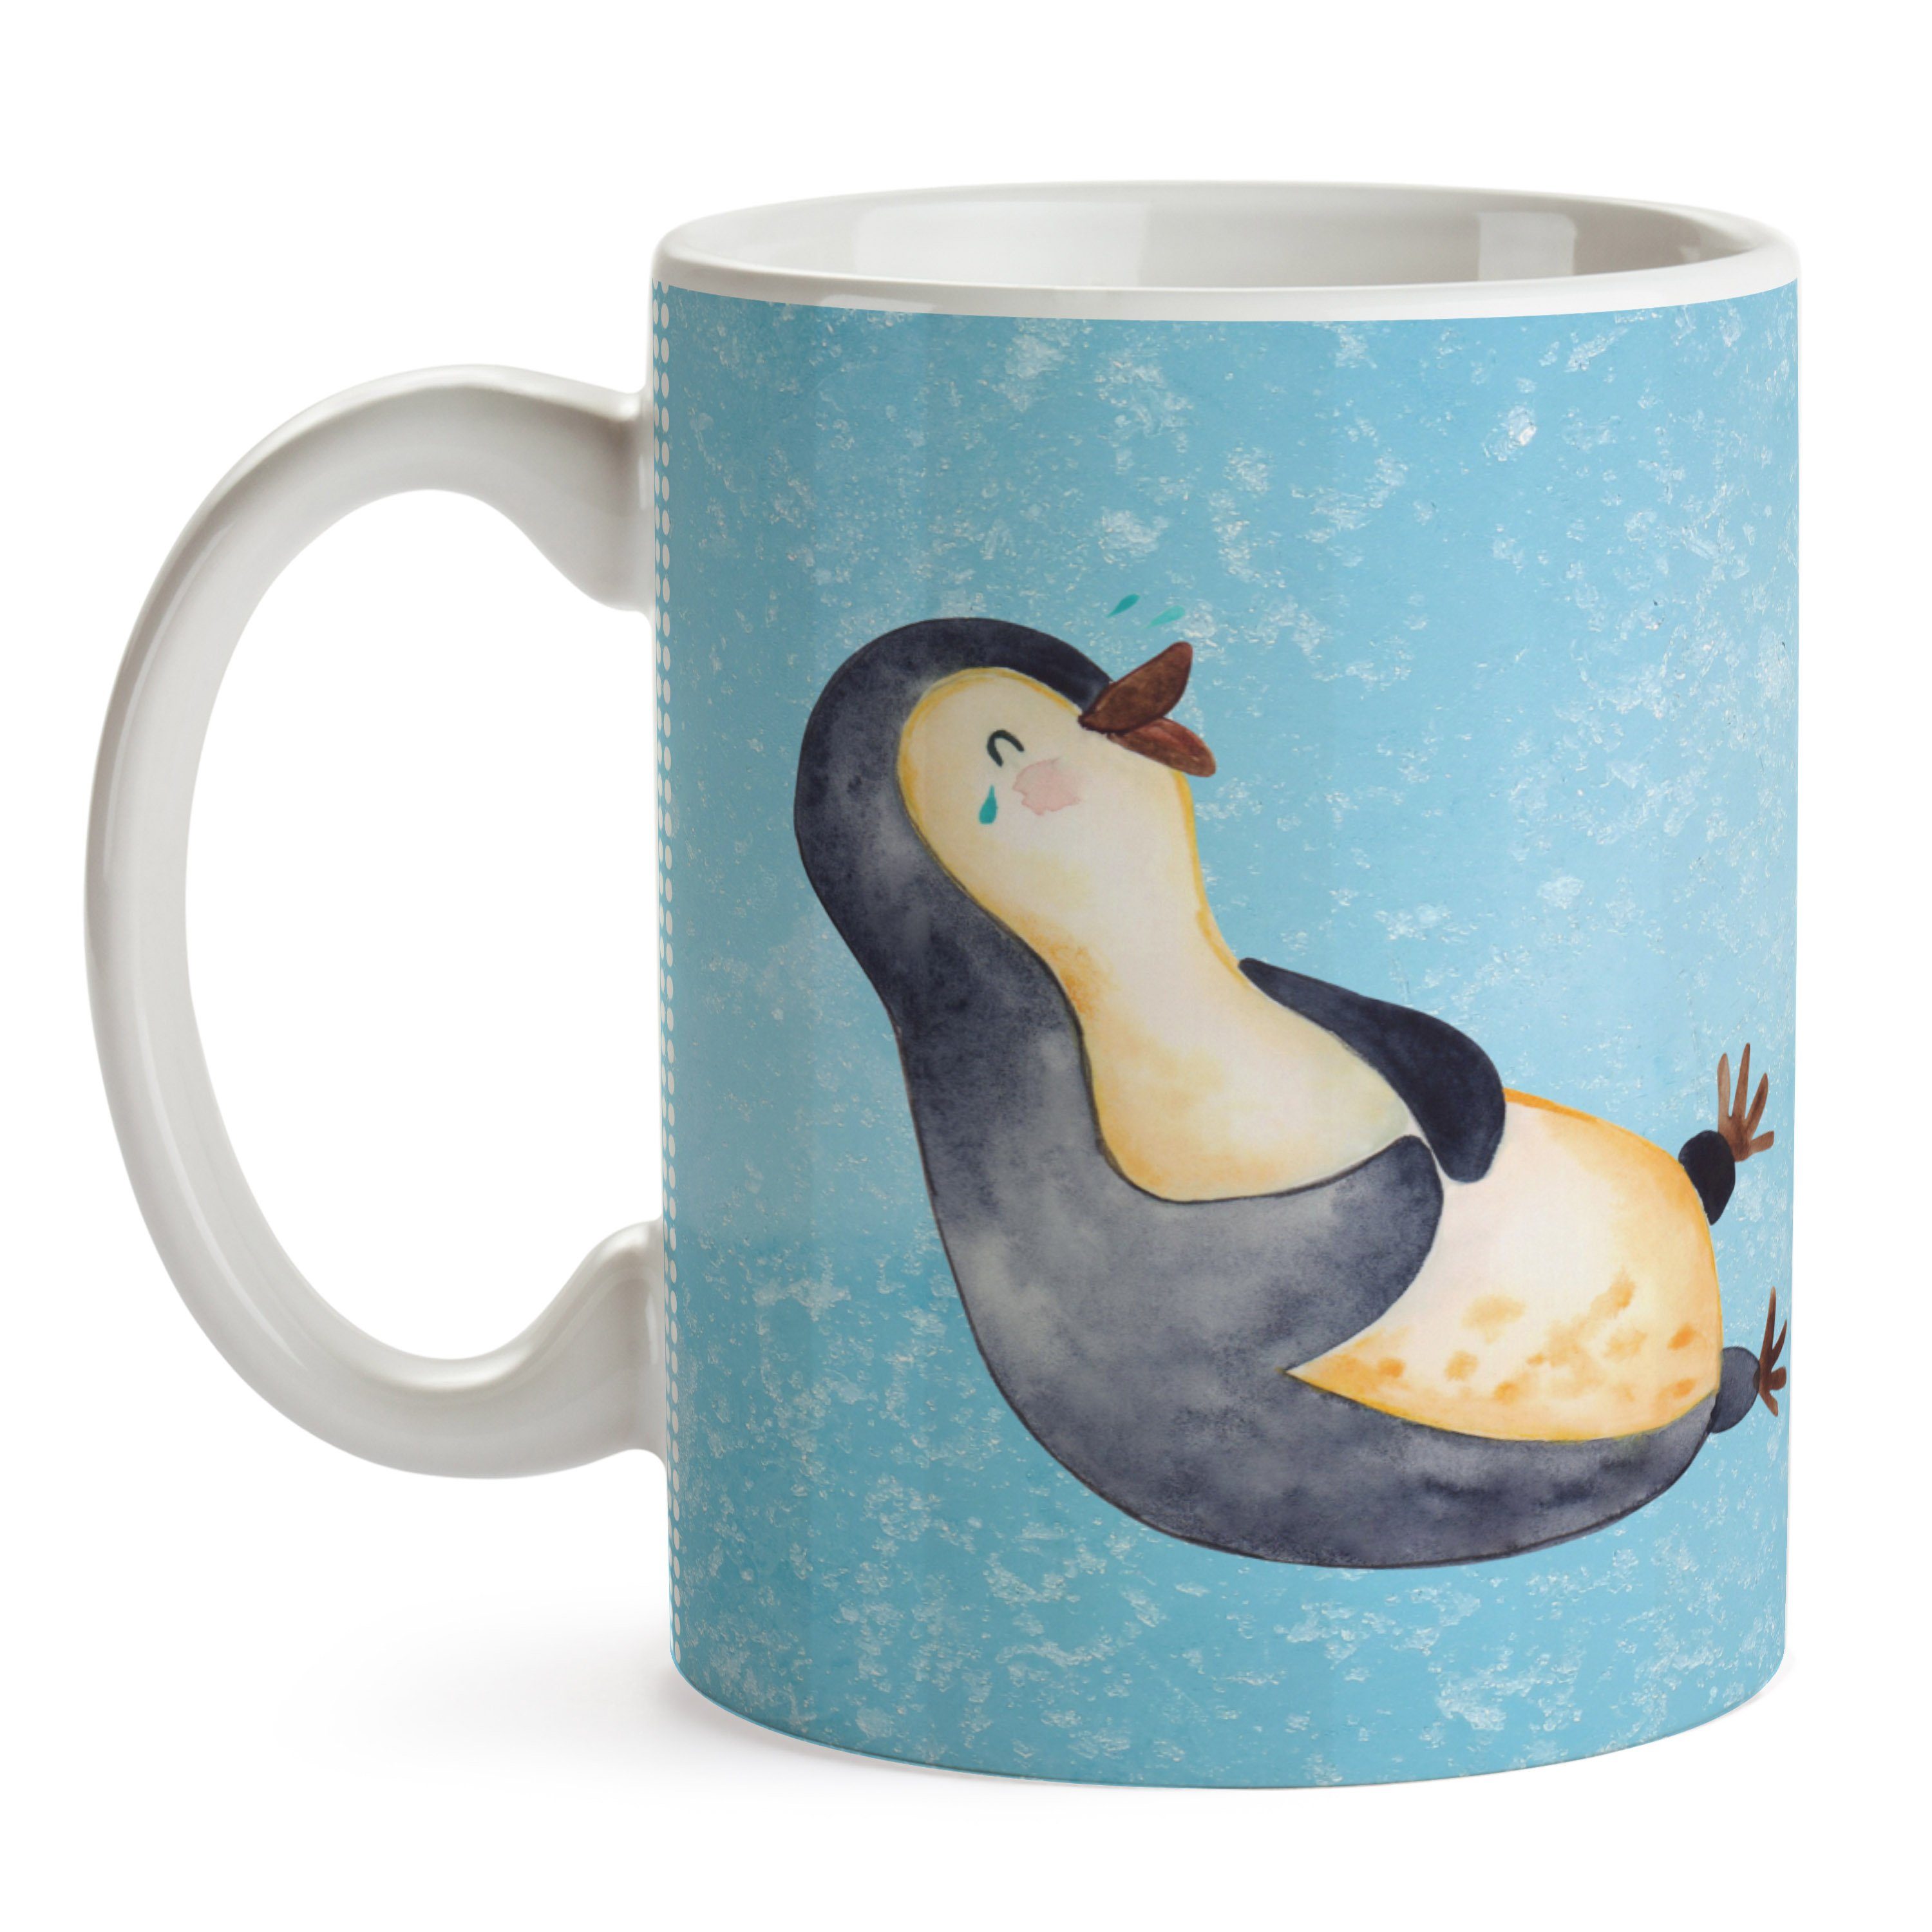 & Mrs. Keramik Pinguin Panda Eisblau Freude, - Mr. - Fröhlich, lachend Geschenk, Kaffeebecher, Tasse